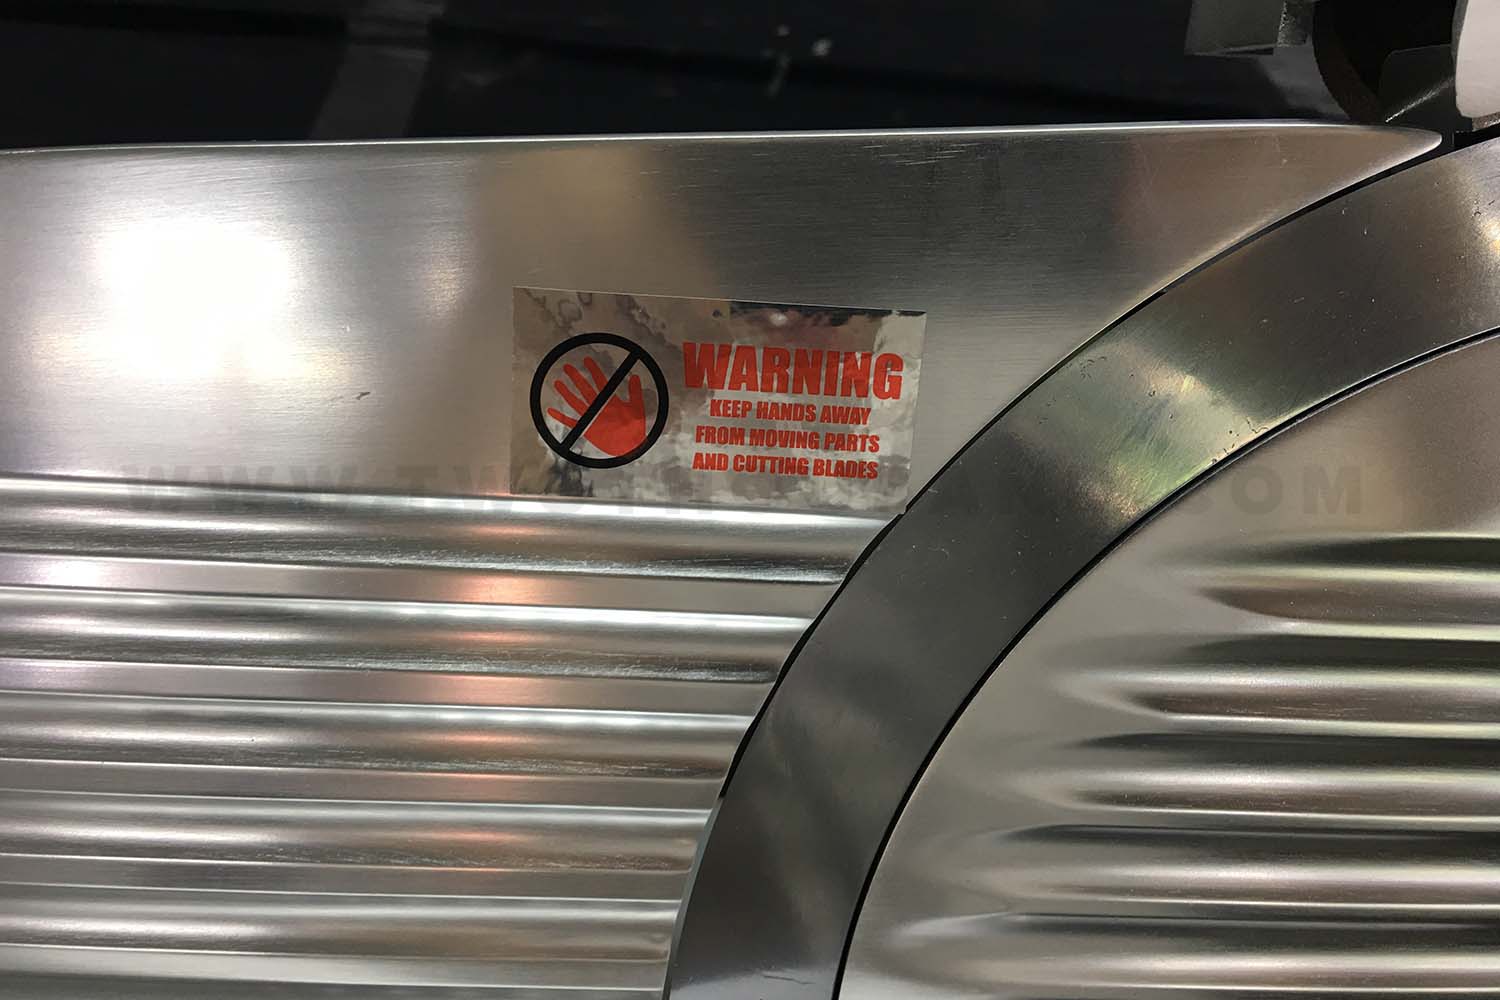 The Warning tag